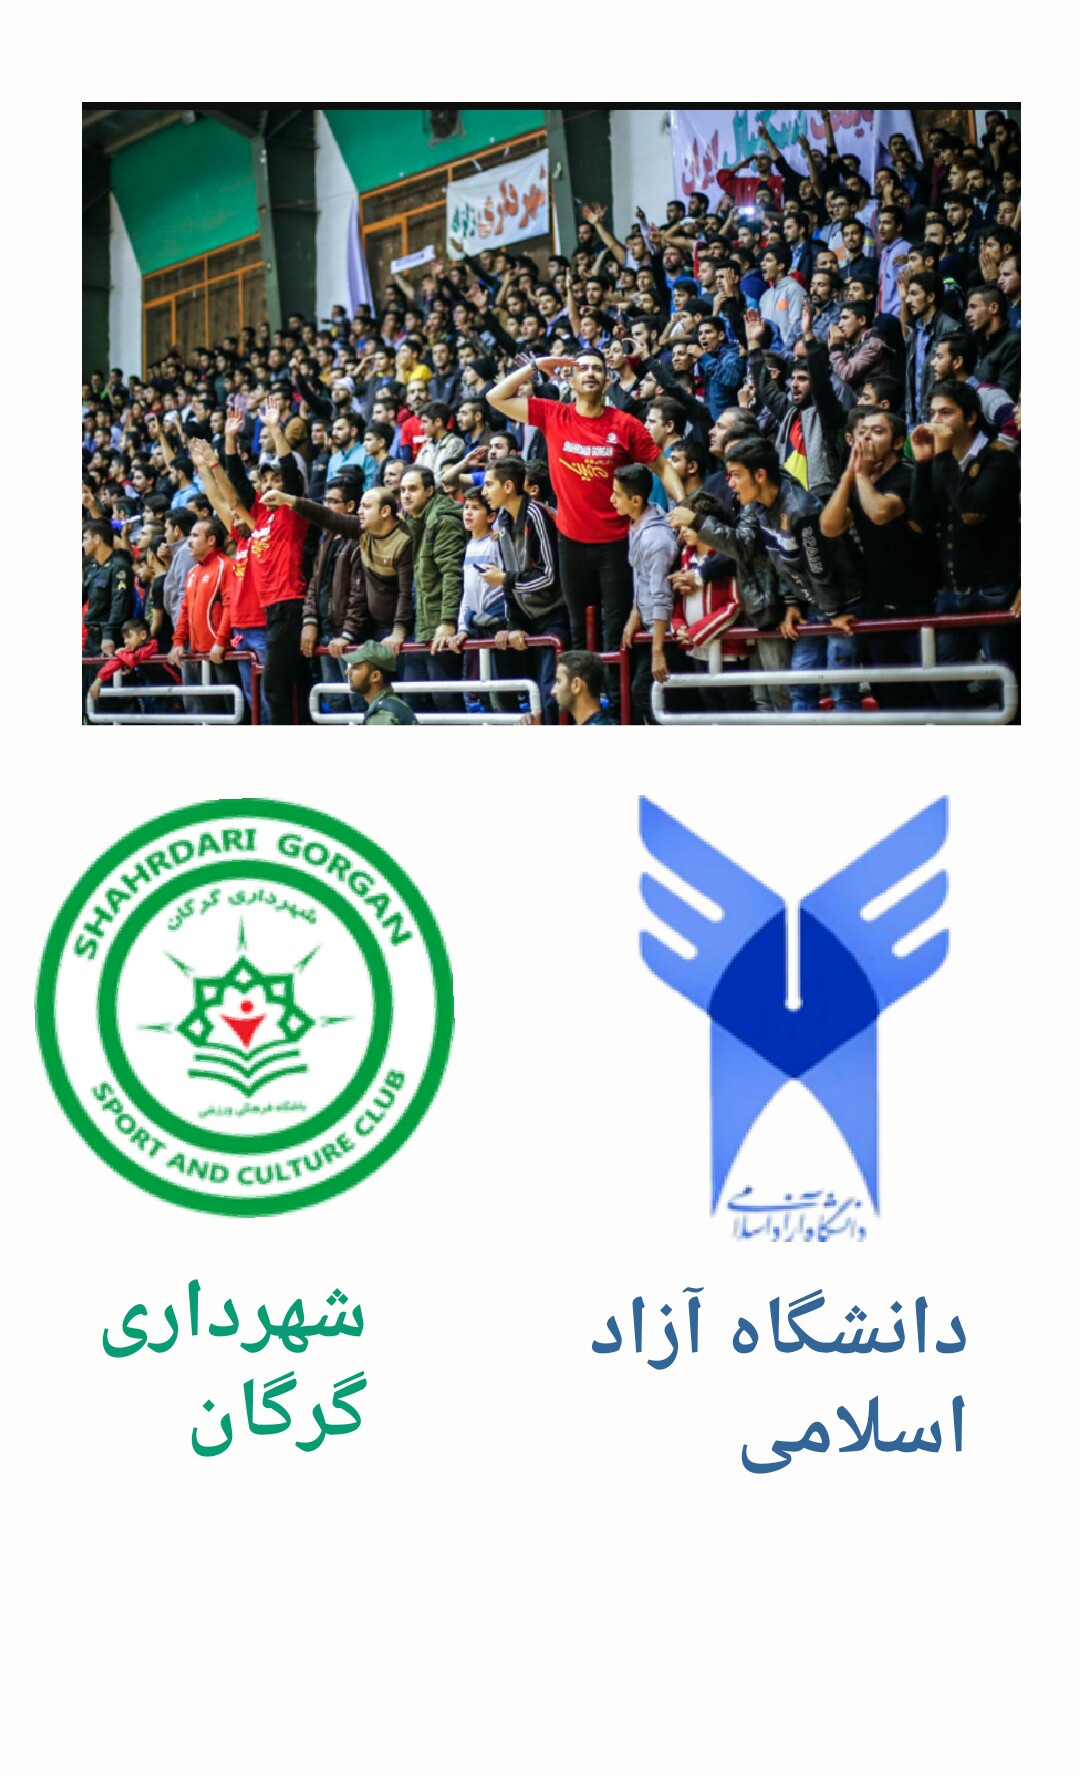 از سری مسابقات لیگ برتر بسکتبال کشور (شهرداری گرگان - دانشگاه آزاد اسلامی)